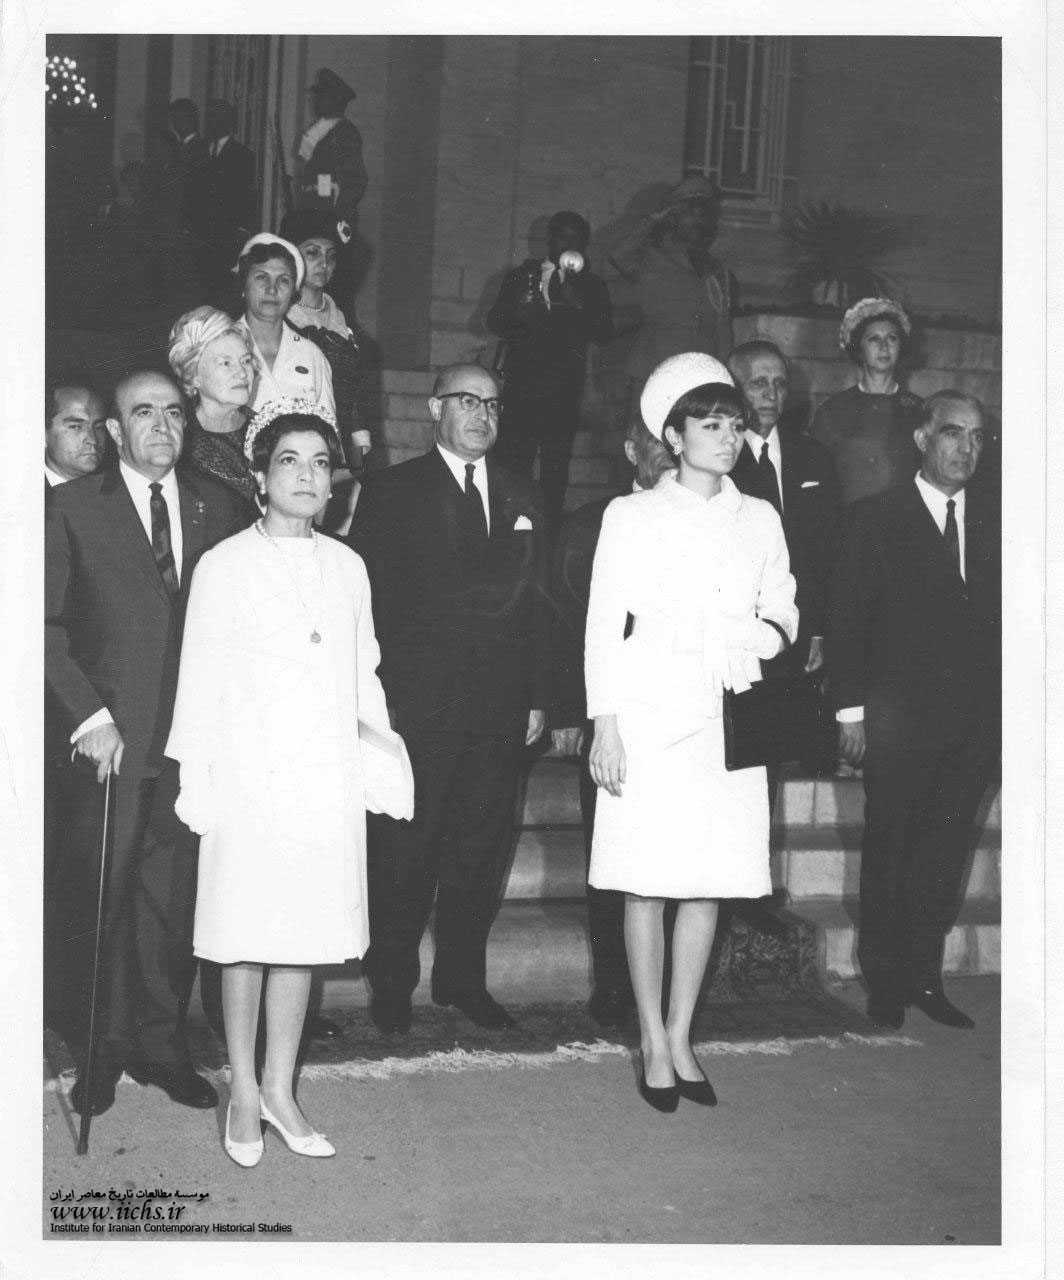  فرح و اشرف پهلوی هنگام شرکت در یک مراسم